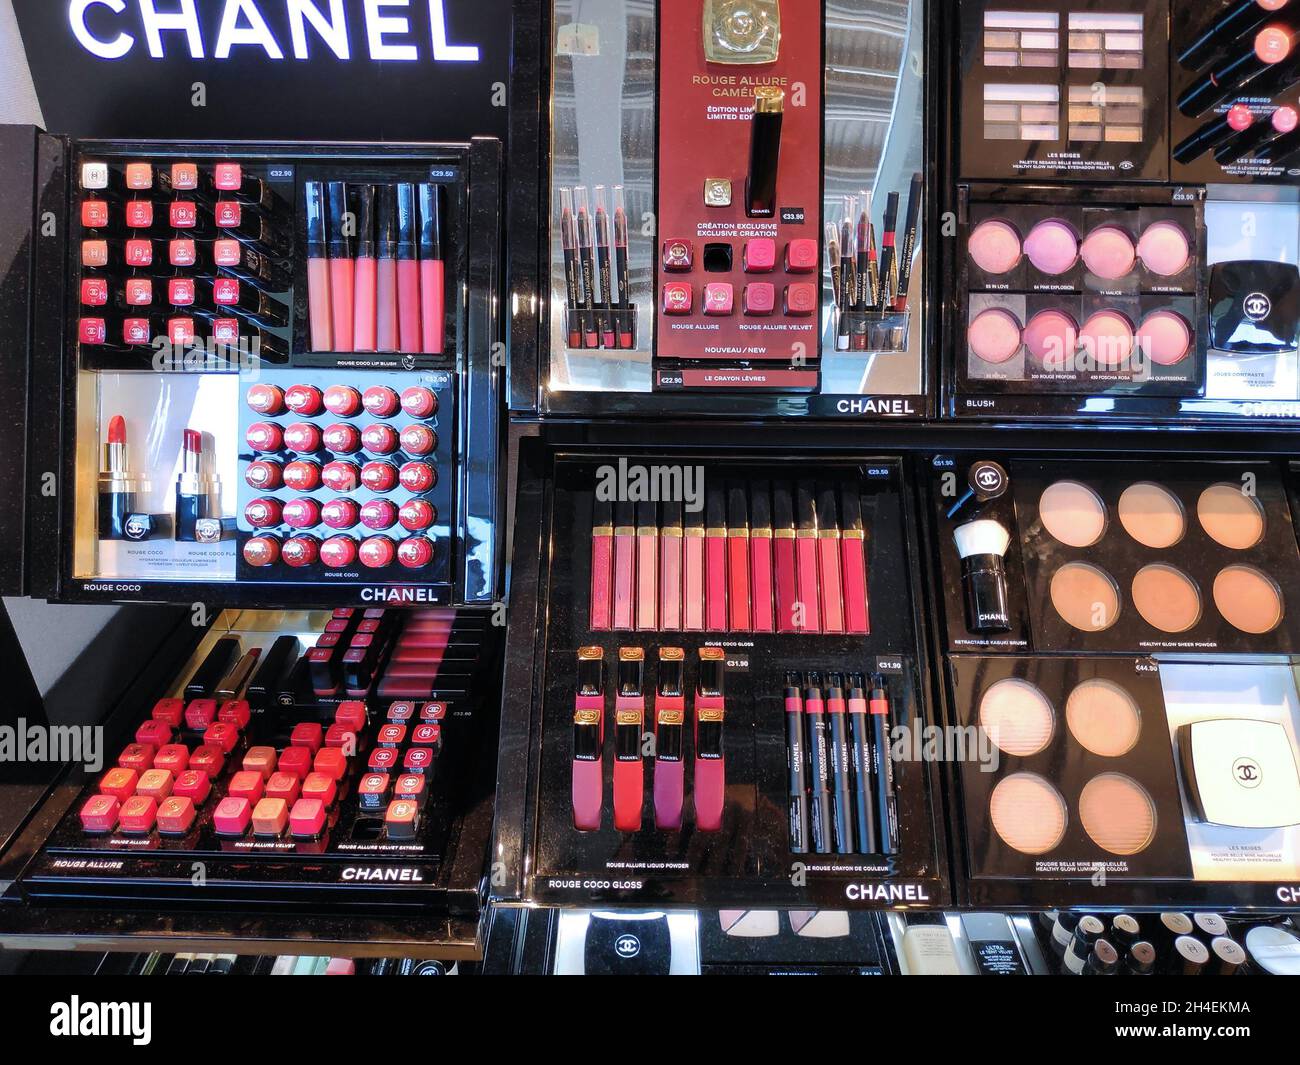 COLOGNE, ALLEMAGNE - 22 SEPTEMBRE 2021 : cosmétiques et produits de beauté de luxe chers de marque Chanel dans un magasin hors taxes de l'aéroport de Cologne, Allemagne. Banque D'Images